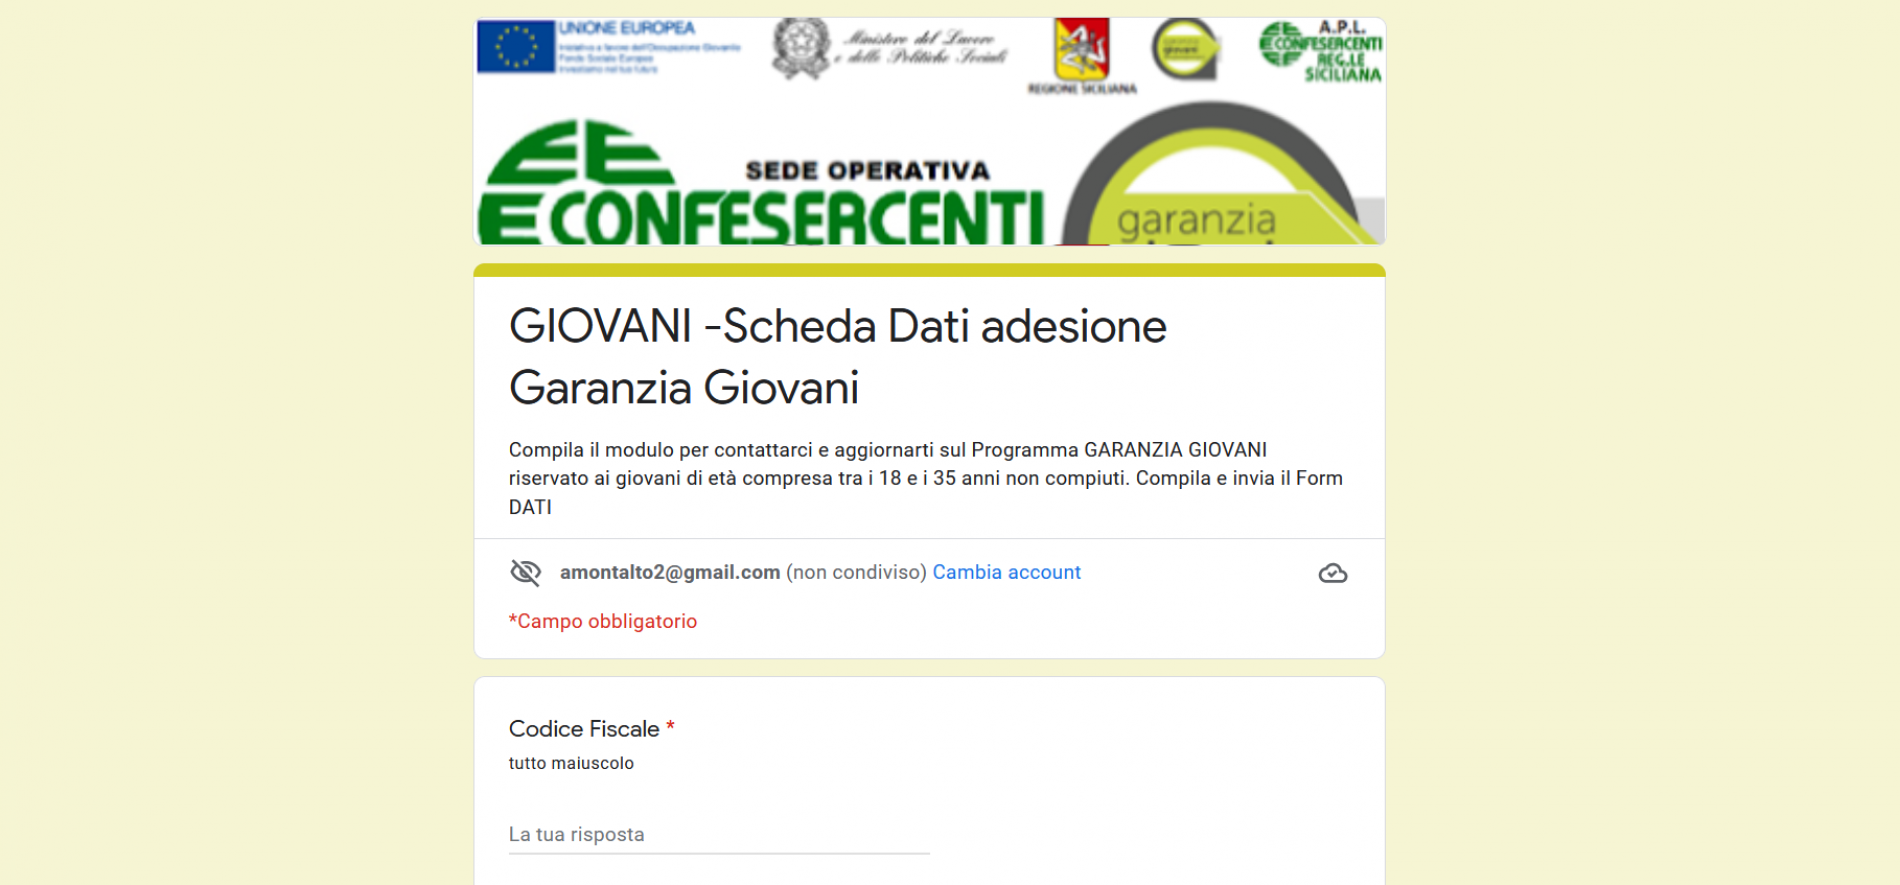 Riparte Garanzia Giovani: Confesercenti Enna a supporto di giovani e imprese per avviare le pratiche.